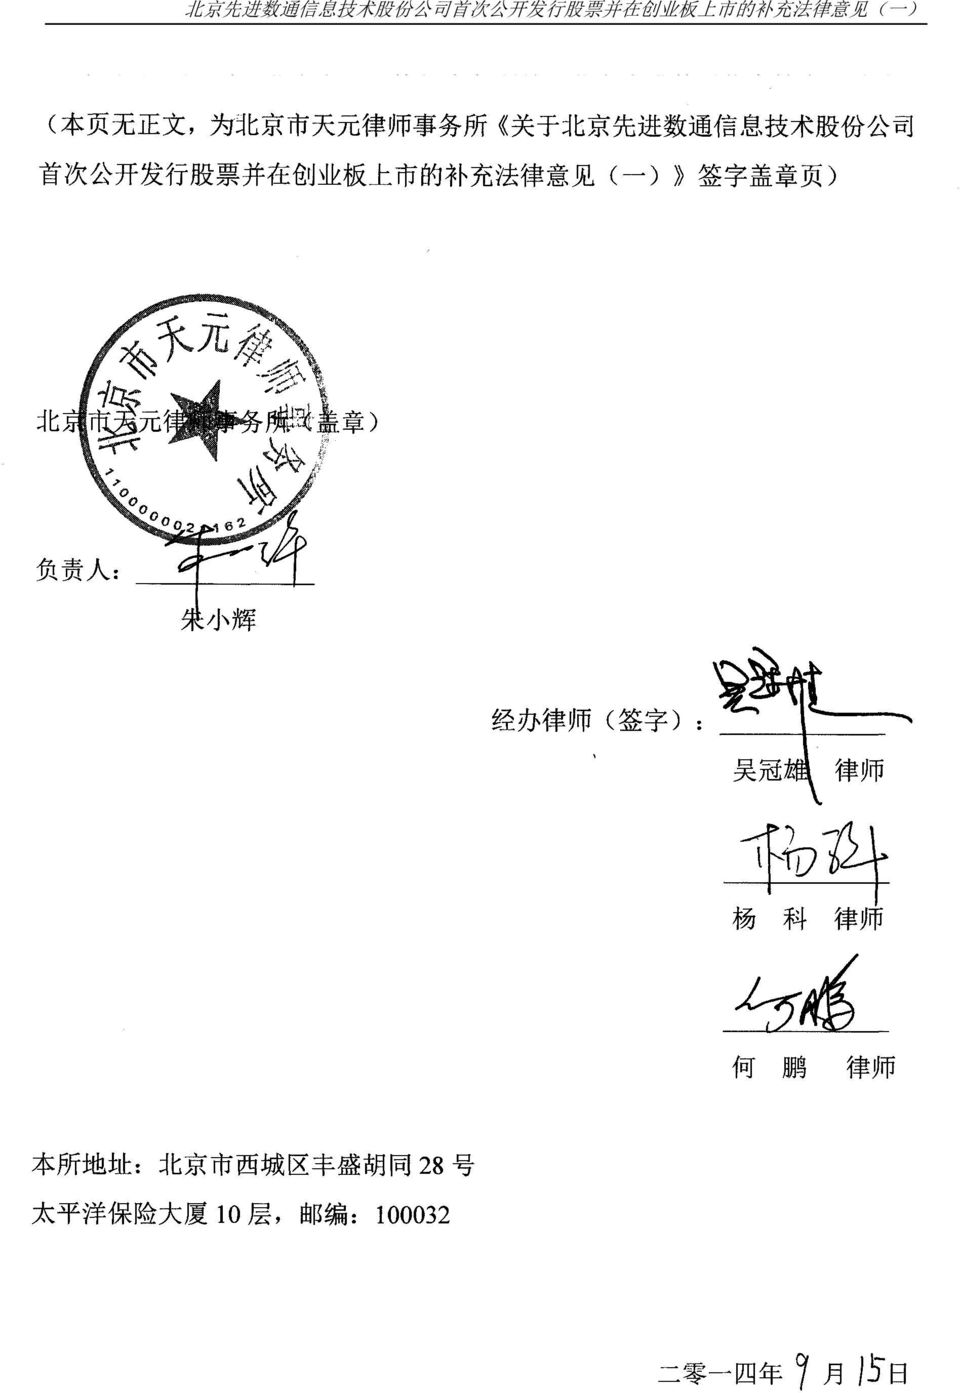 板 上 市 的 补 充 法 律 意 见 ( 一 ) 之 签 字 盖 章 页 ) 北 京 市